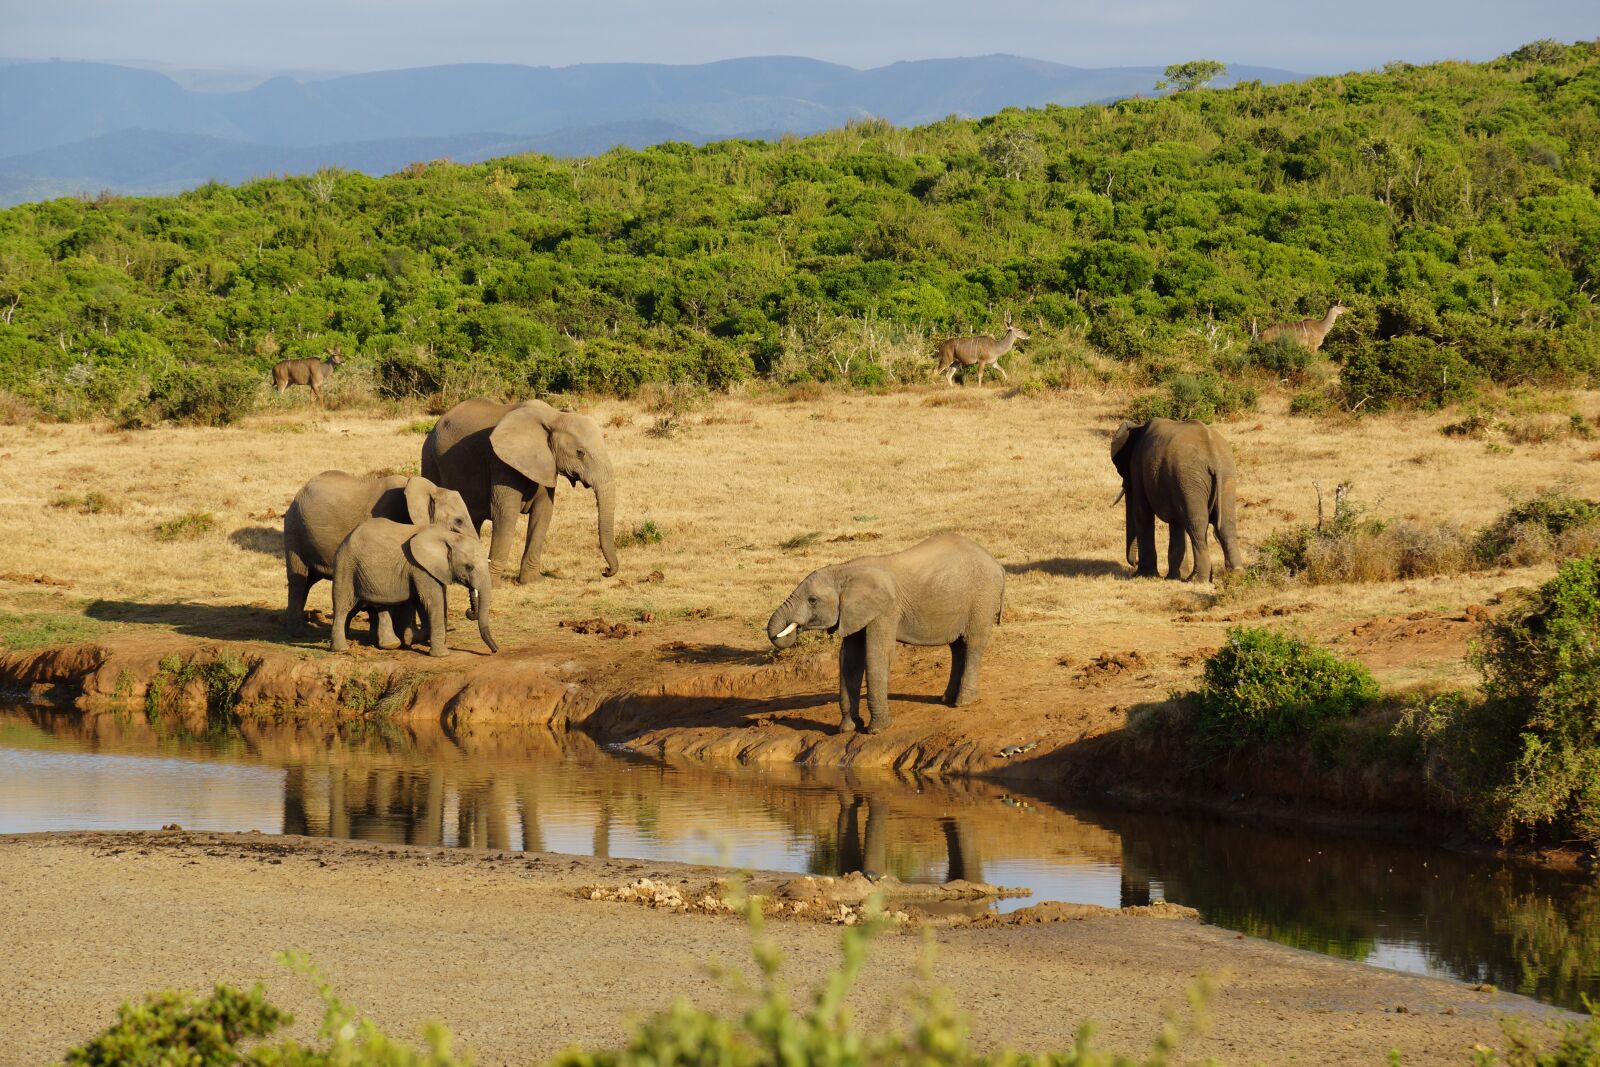 Elephant river. Four Seasons Танзания сафари водопой. Животные Африки. Водопой в Африке. Пейзажи Африки с животными.